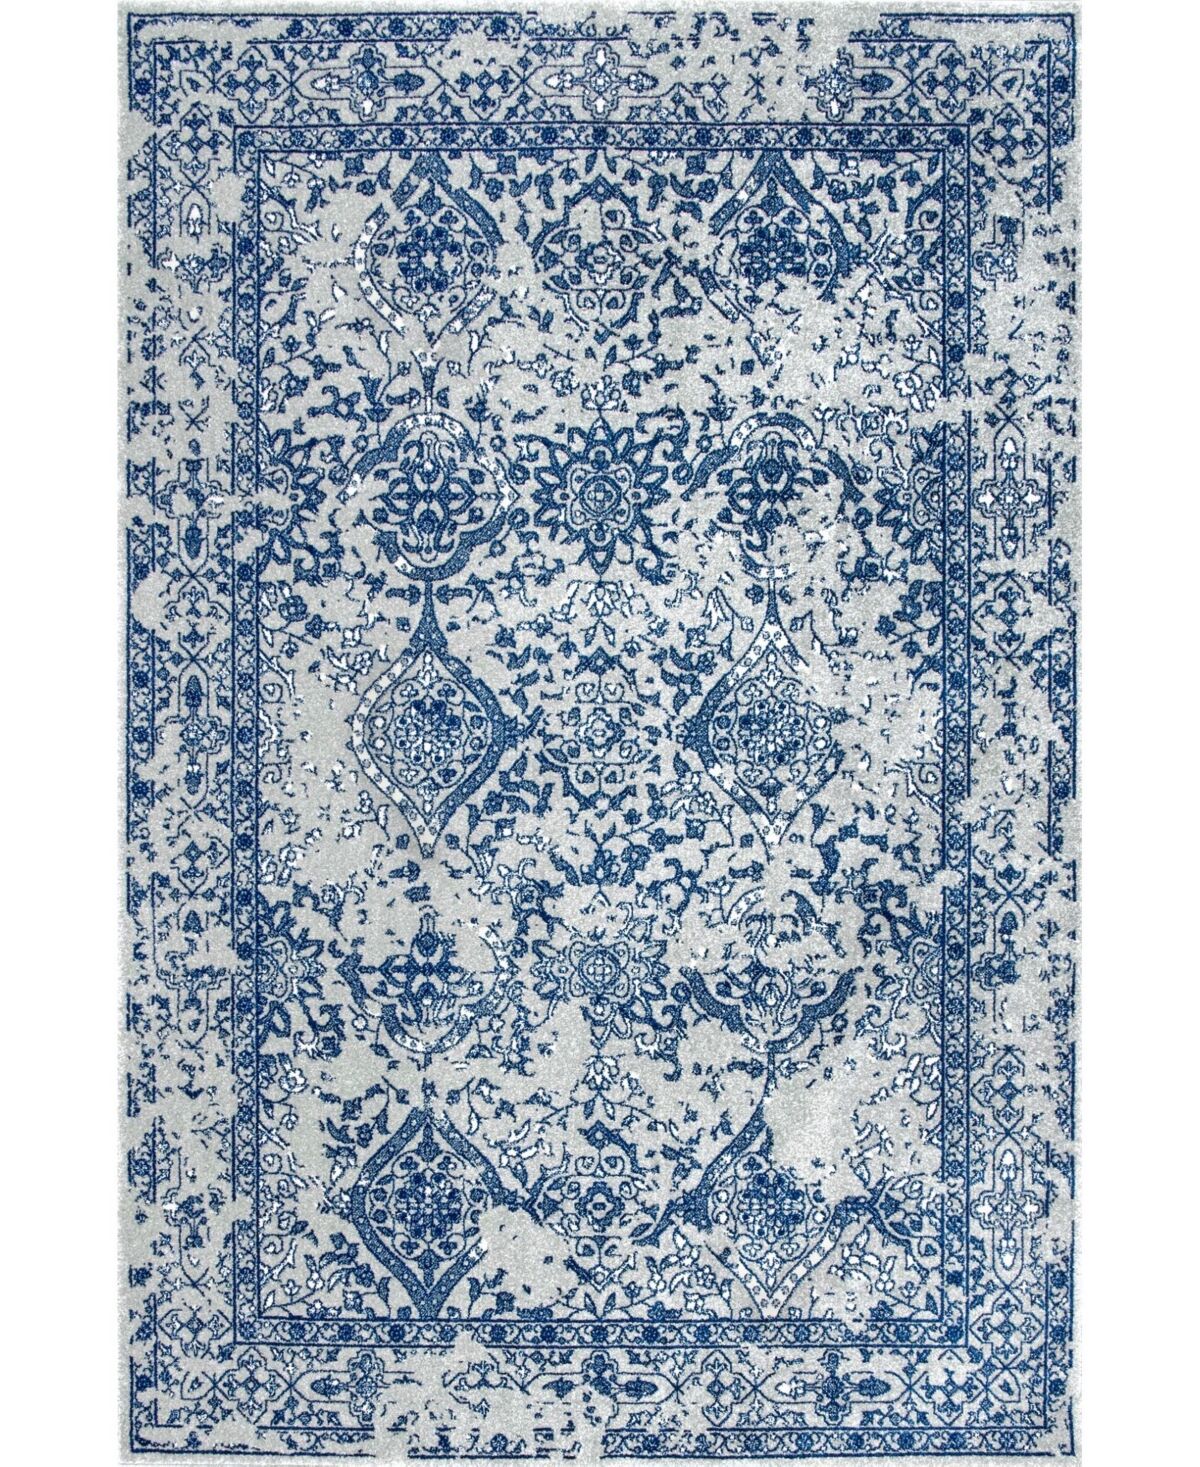 nuLoom Bodrum Oriental Vintage-Inspired Odell 8' x 10' Area Rug - Light Blue